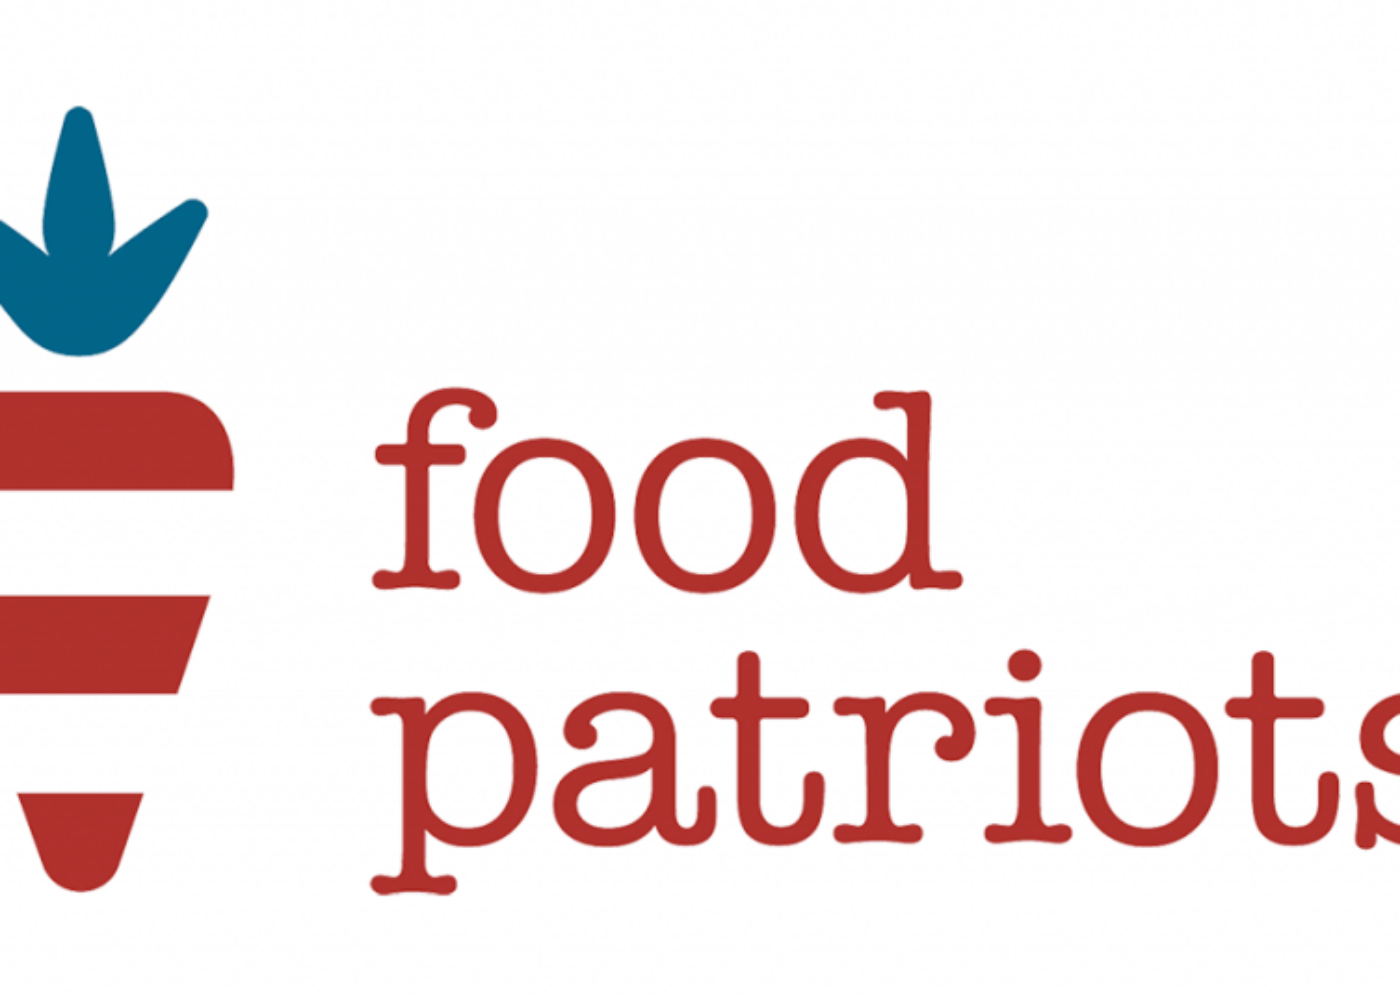 food patriots